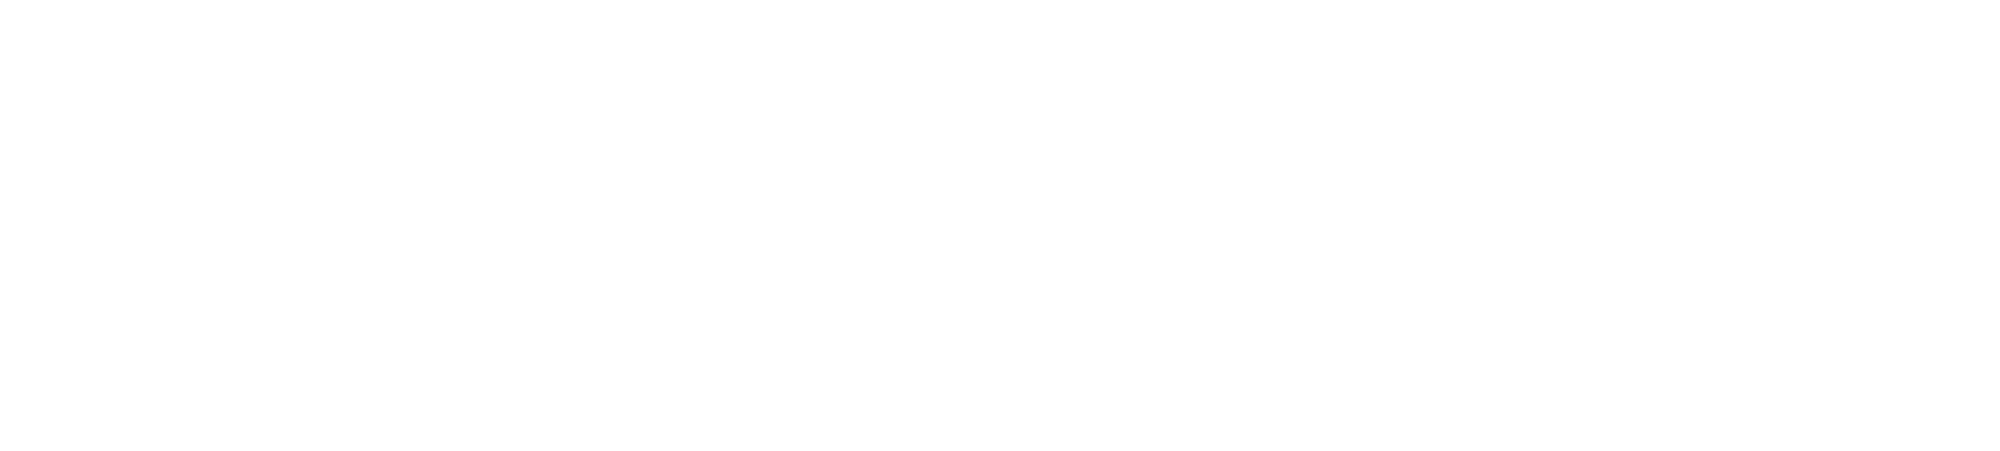 Marlows Carpets